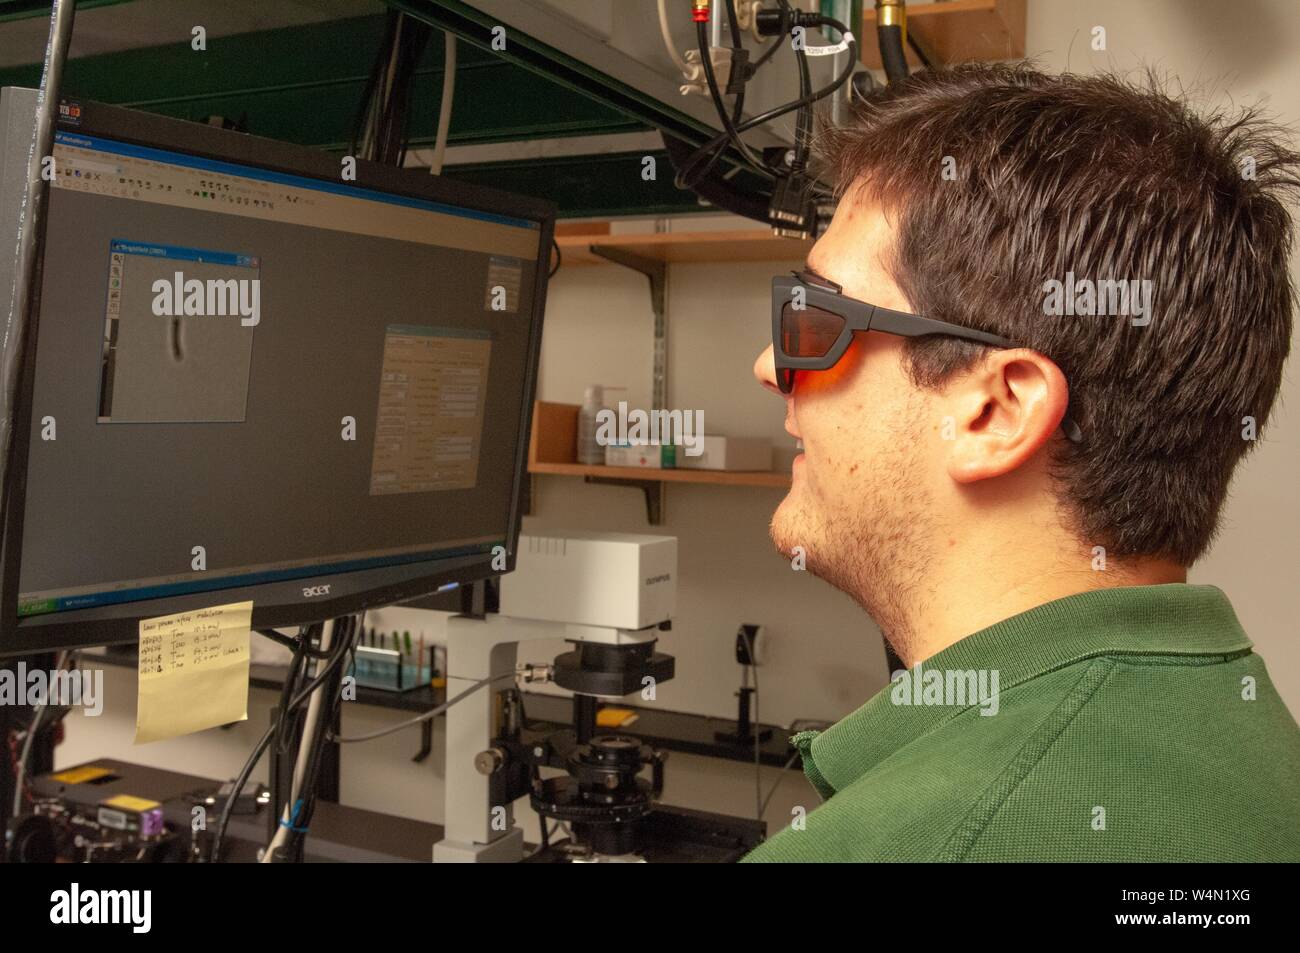 Portrait de profil d'un chercheur dans le département de biophysique Jenkins à l'Université Johns Hopkins de Baltimore (Maryland), le port de lunettes de protection lors de l'affichage d'une image sur un écran d'ordinateur, le 22 juillet 2008. À partir de la collection photographique de Homewood. () Banque D'Images